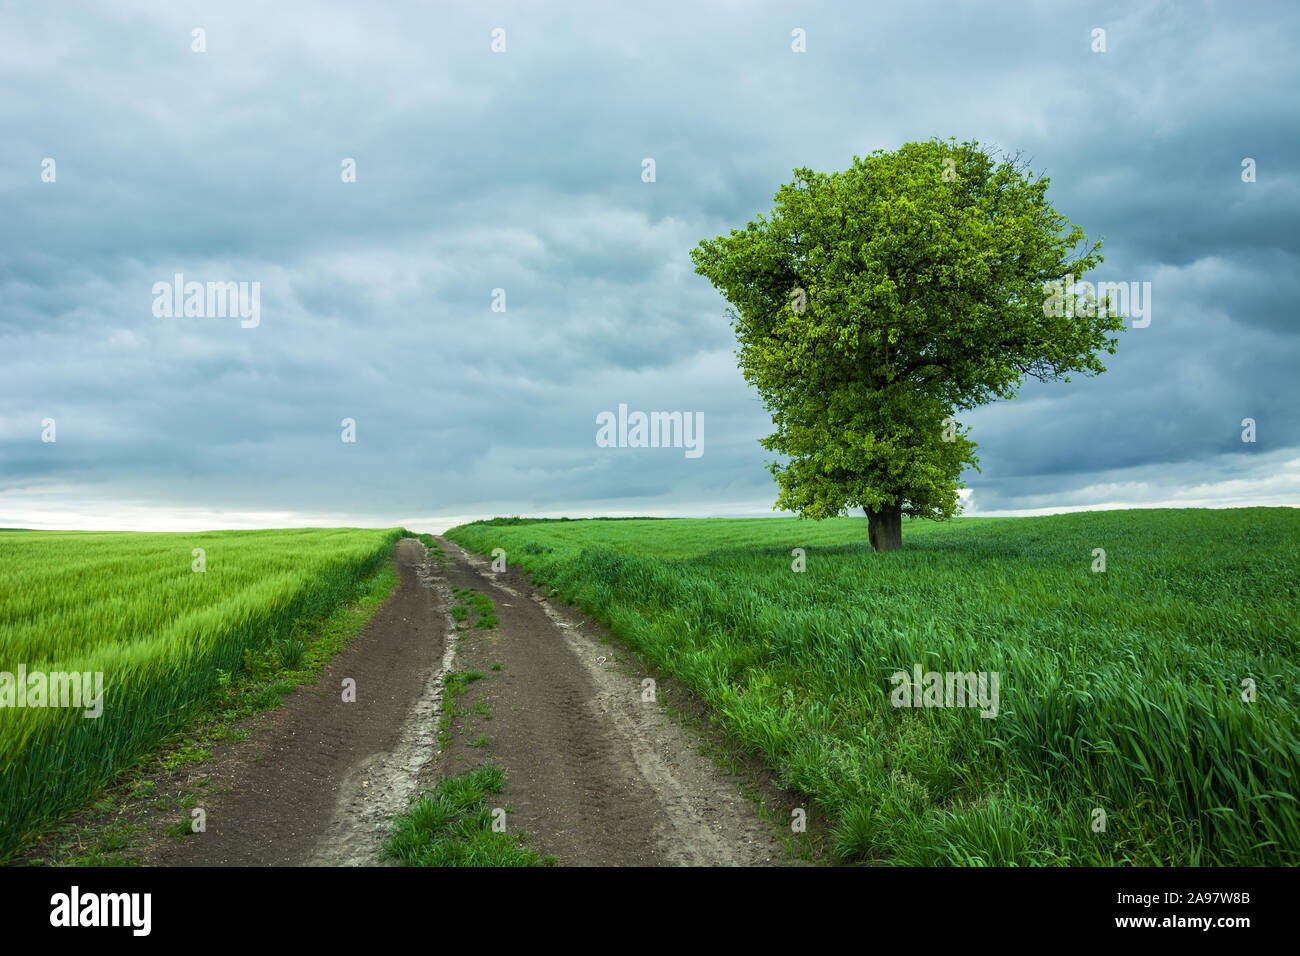 Unbefestigte Straße durch grüne Felder und einsame großer Laubbaum, Horizont und dunkle Wolken. Staw, Polen Stockfoto